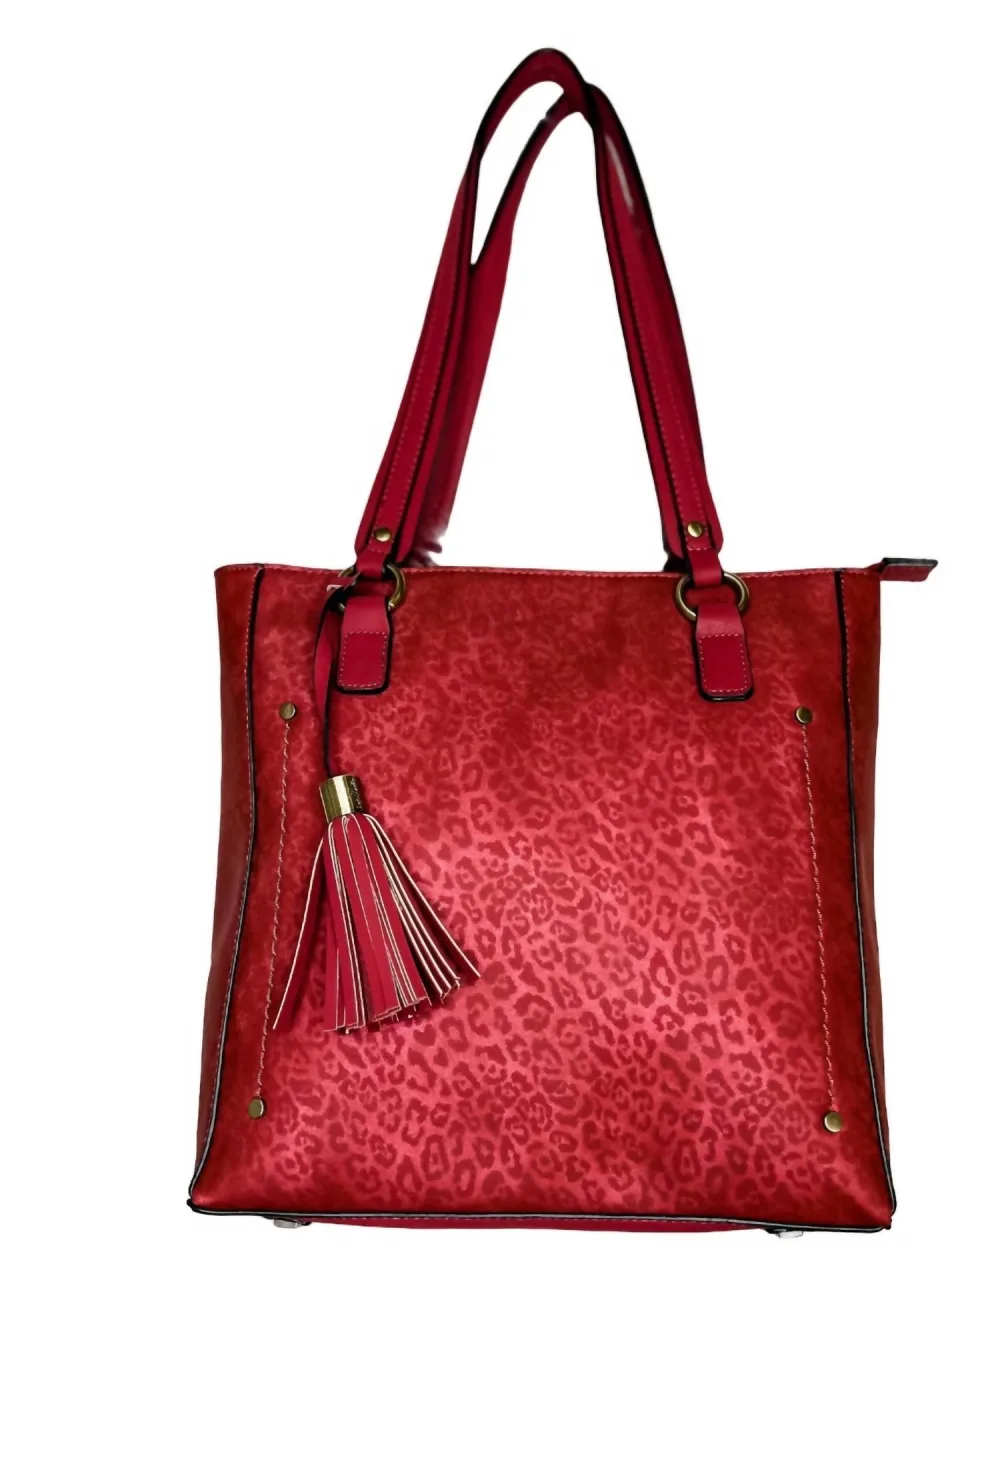 Simply Noelle - Leopard Shoulder Bag